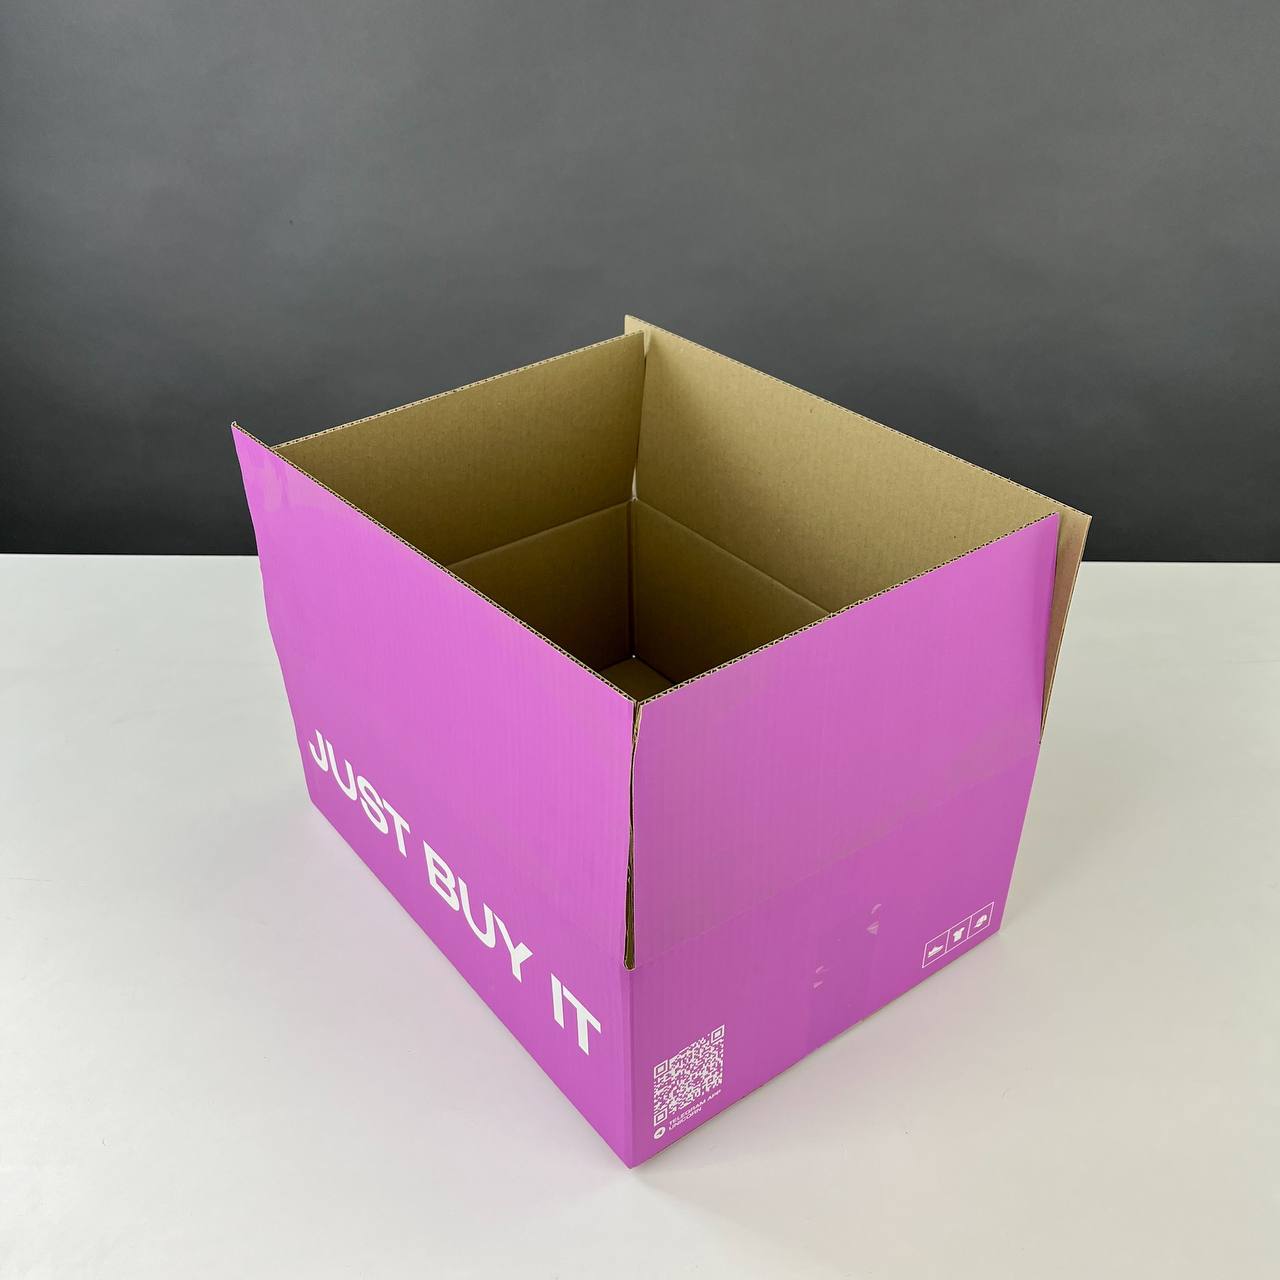 Как красиво и аккуратно обклеить коробку бумагой: пошаговая инструкция